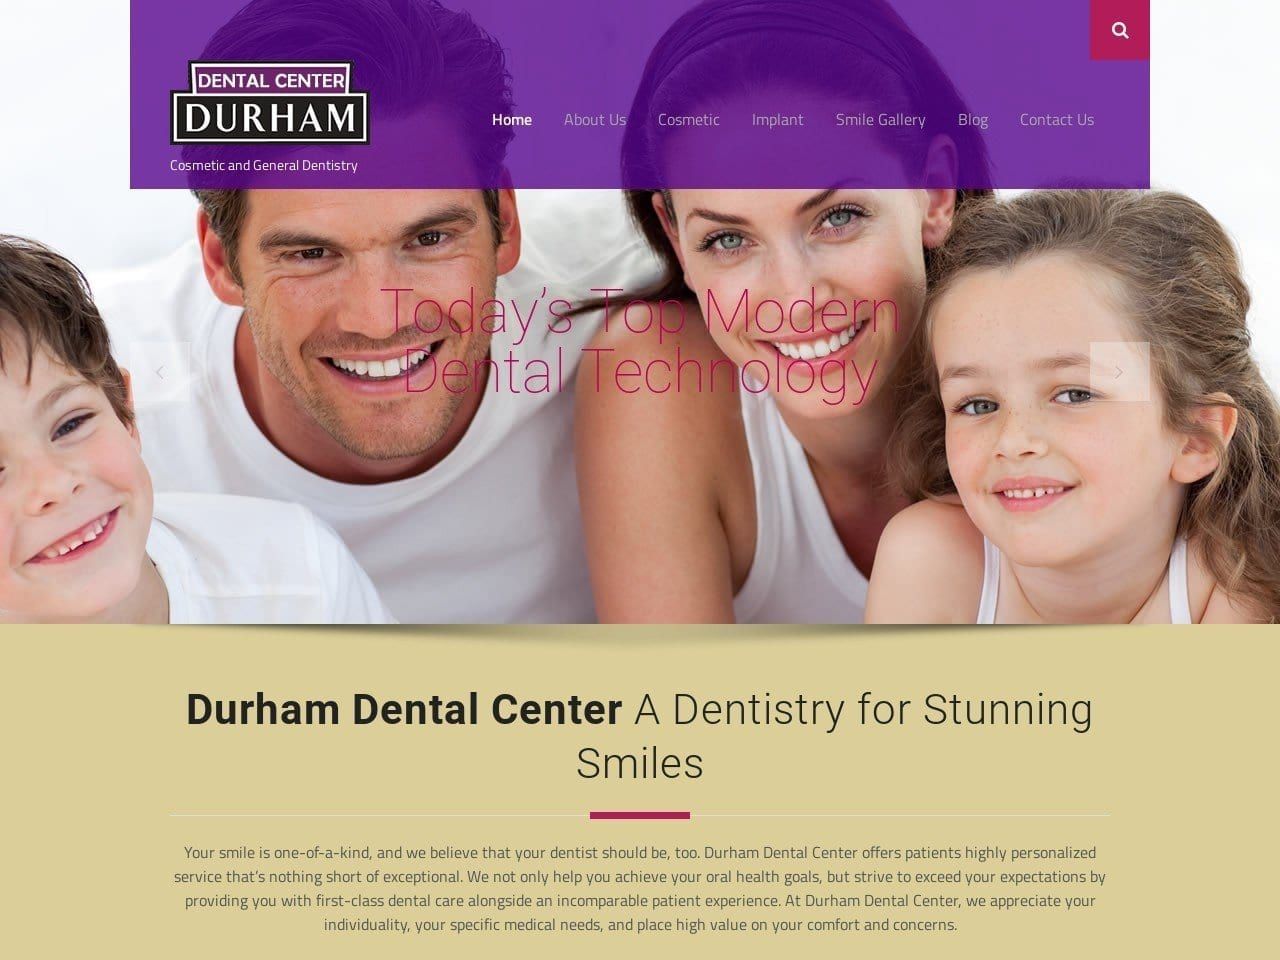 Durham Dental Center Website Screenshot from durhamdentalcenter.com